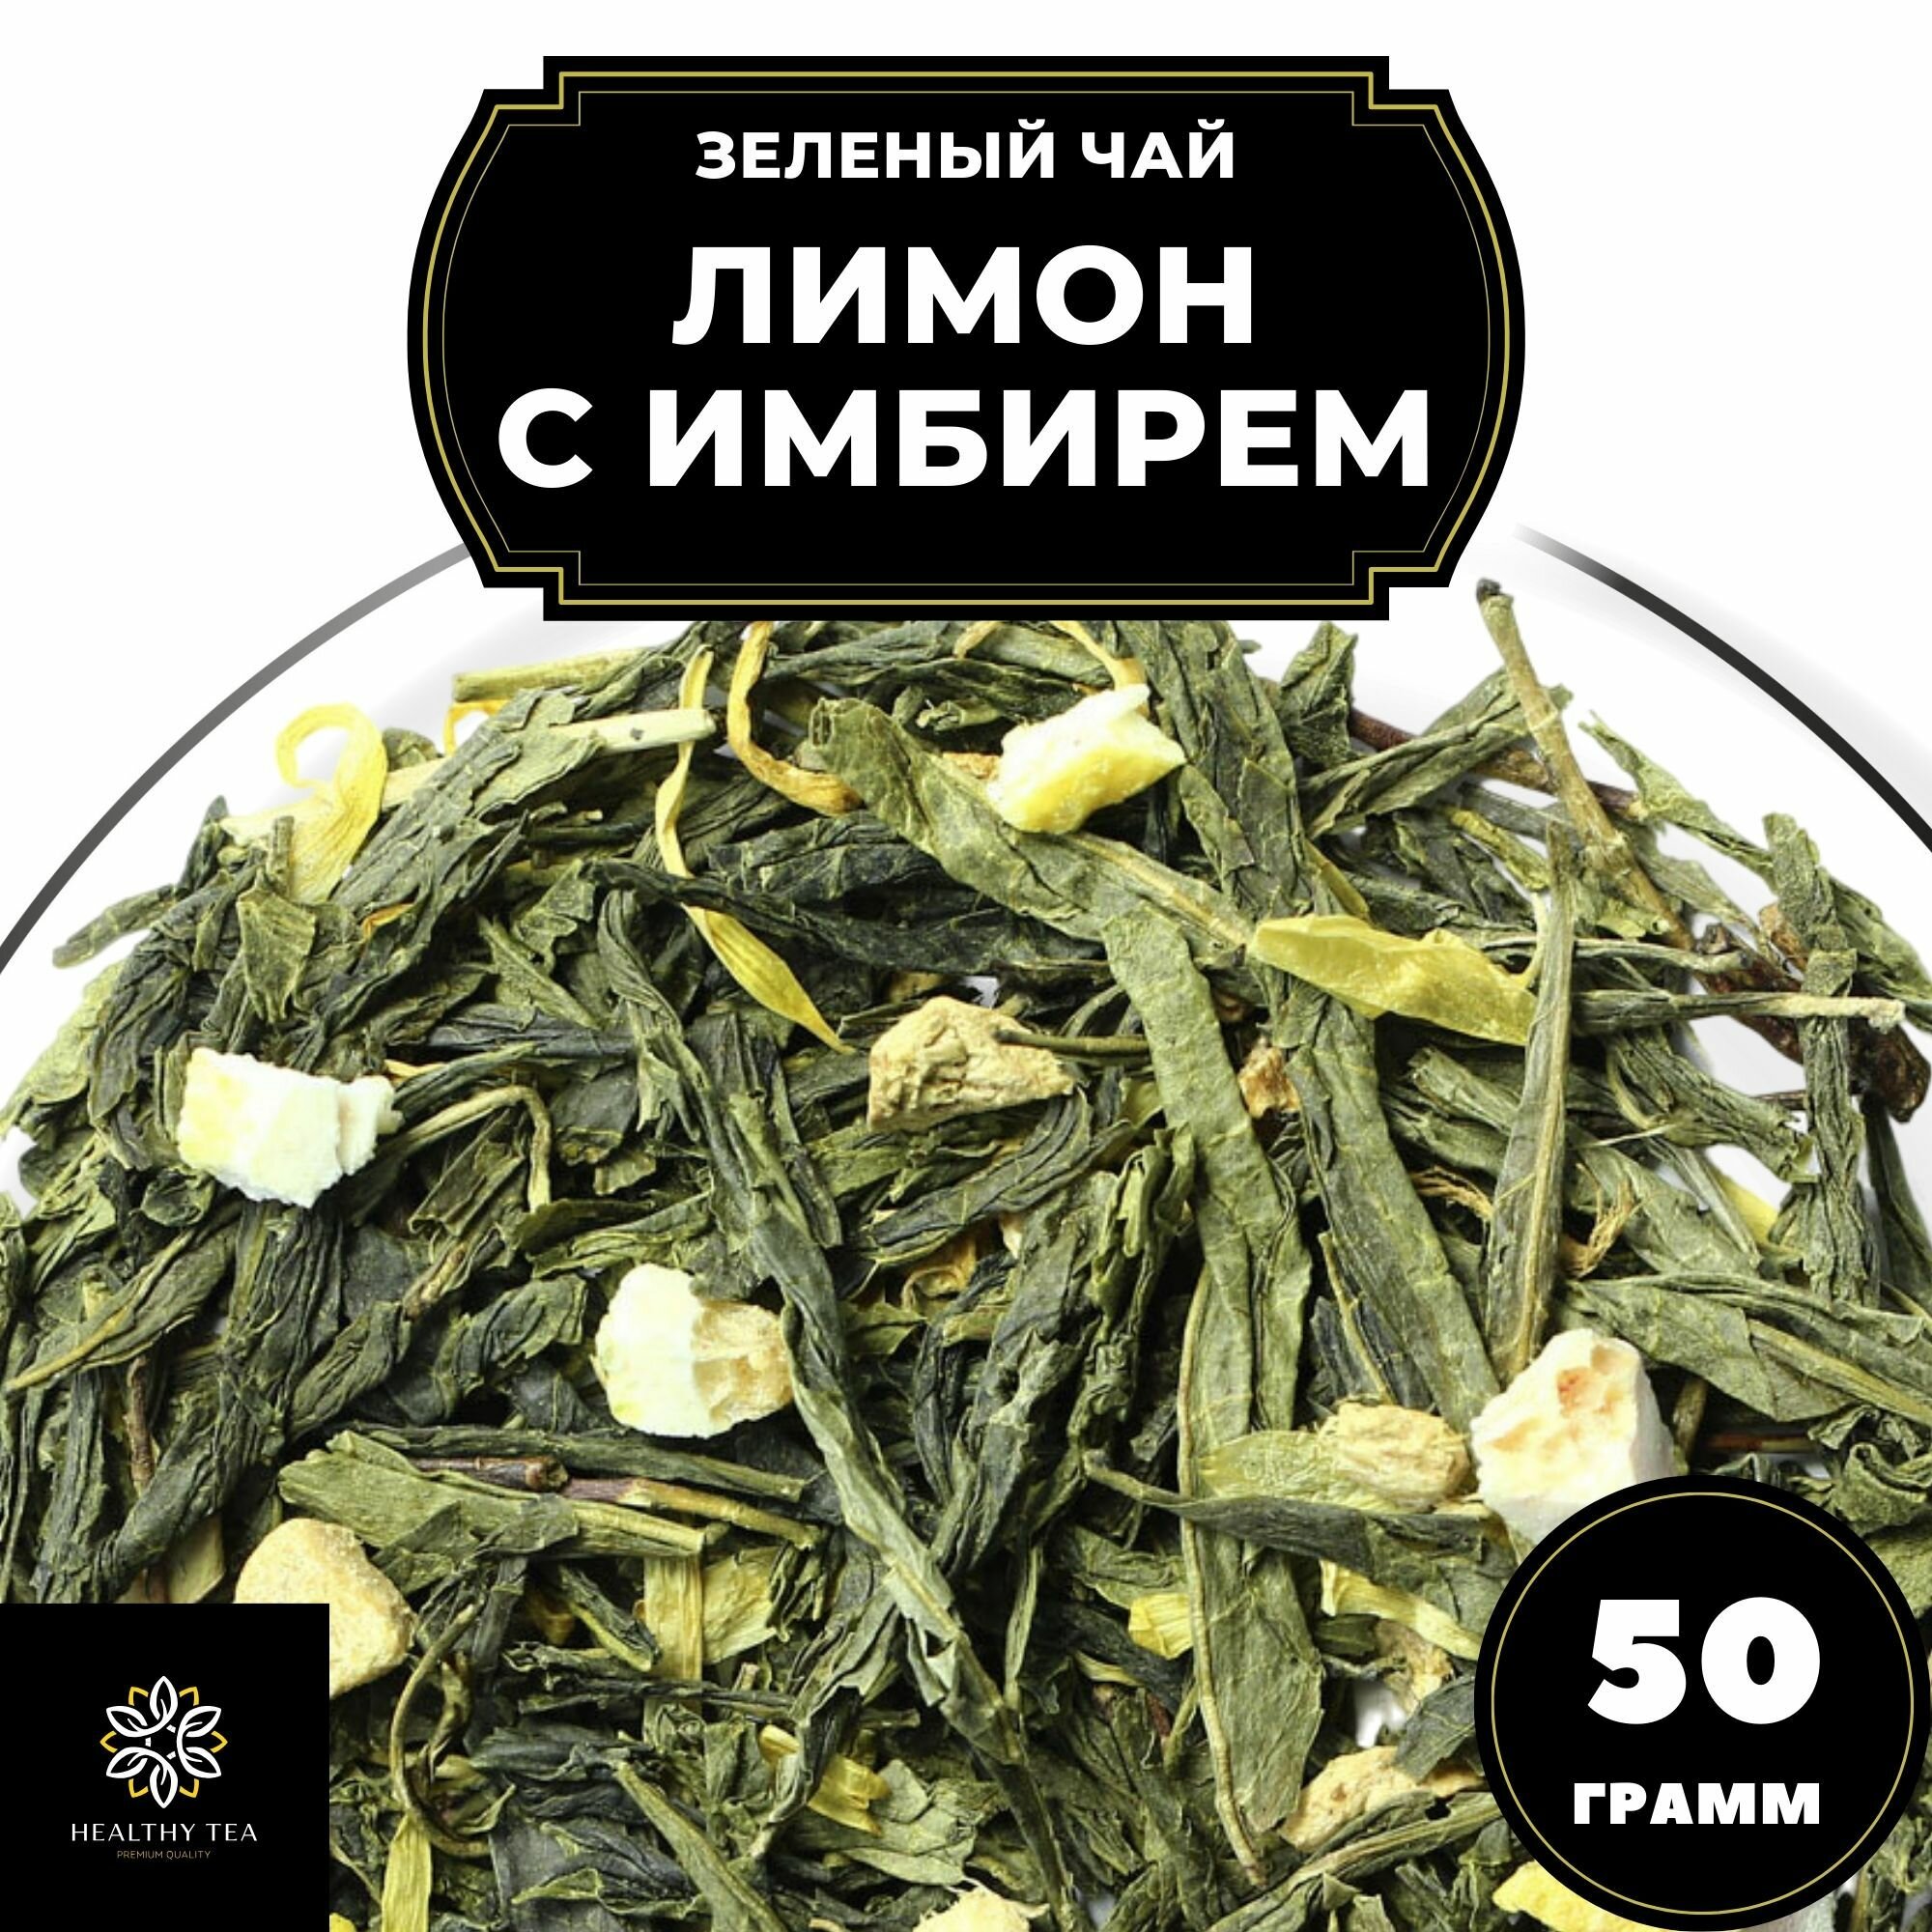 Китайский Зеленый чай с имбирем, лимоном и календулой Лимон с имбирем Полезный чай / HEALTHY TEA, 50 г